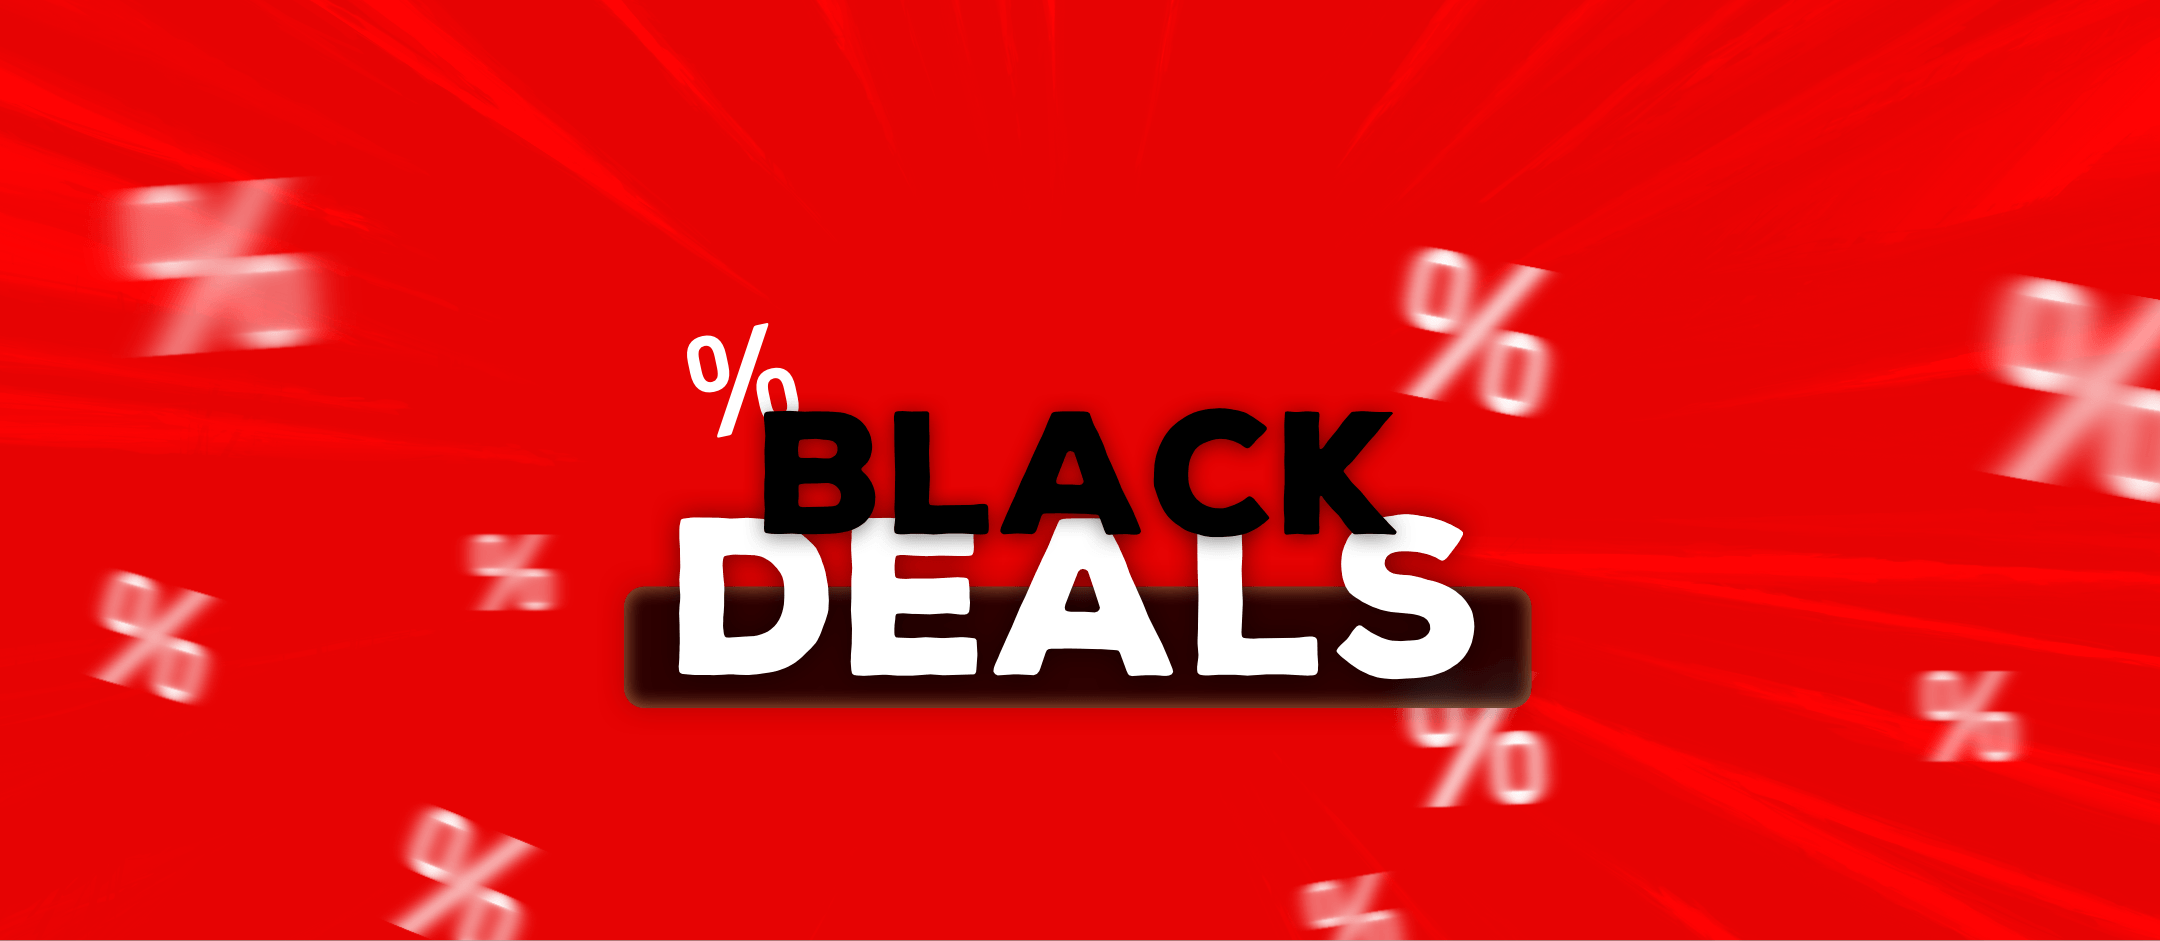 Black Deals